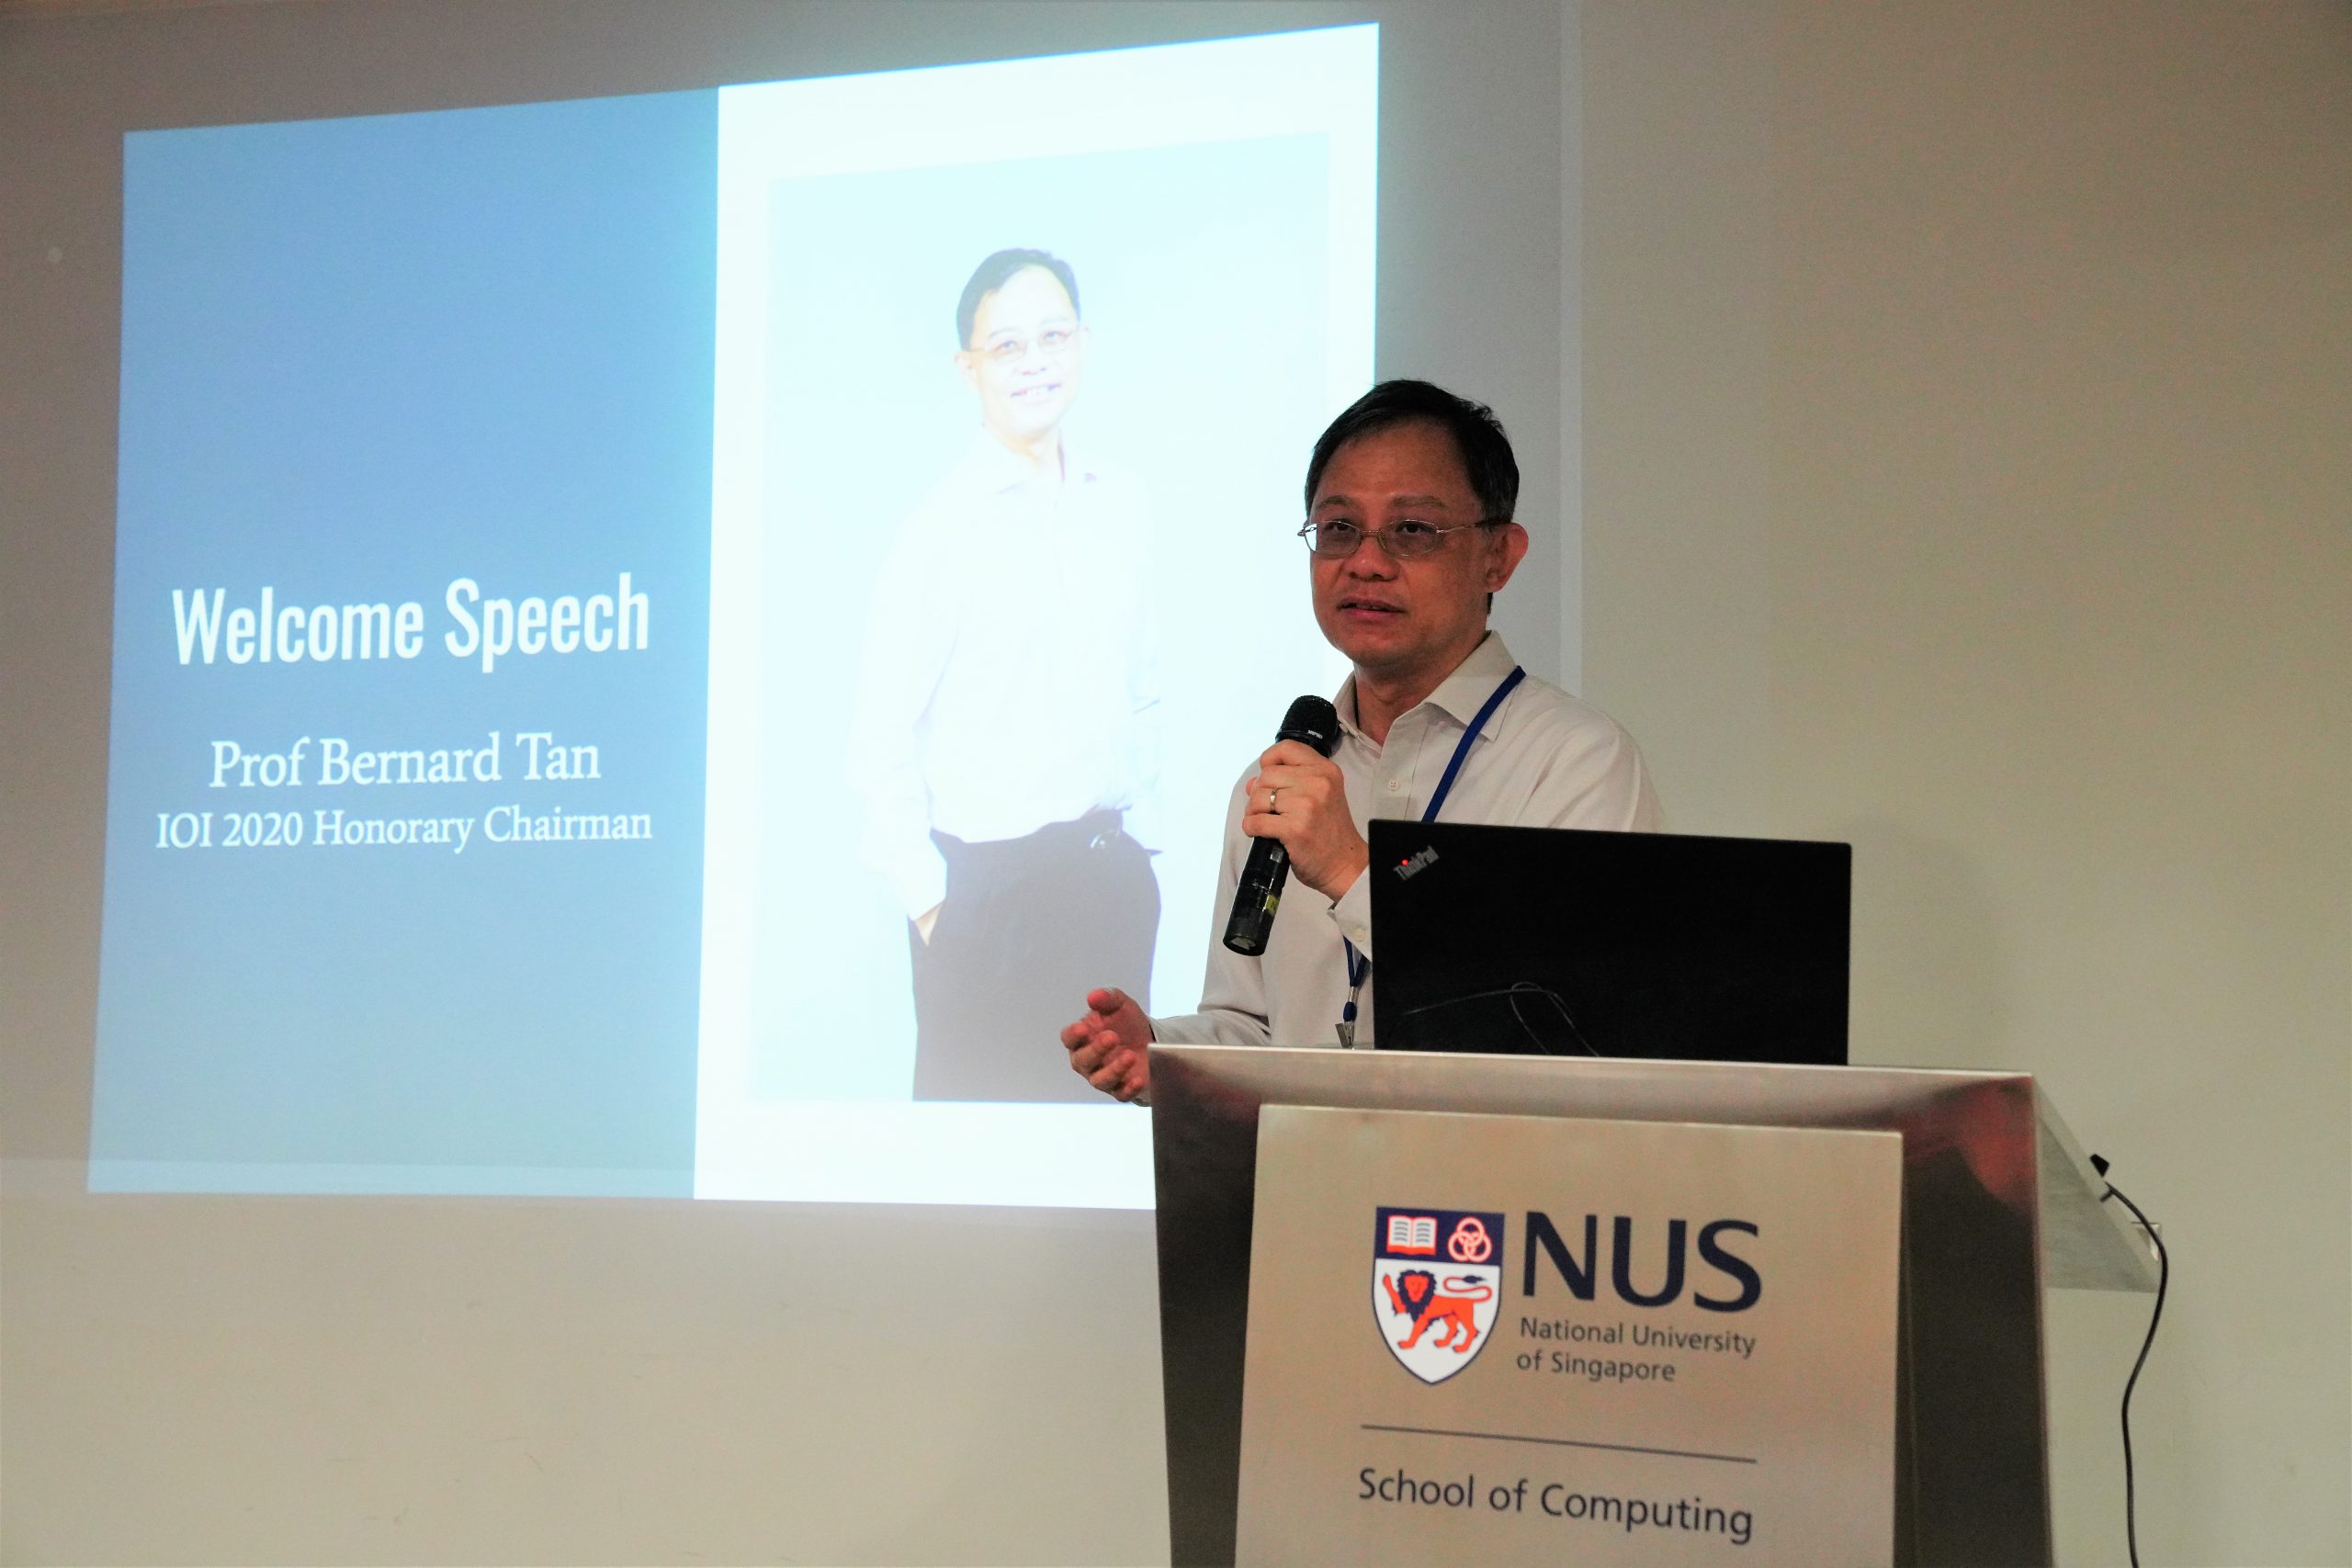 Prof Bernard Tan's speech